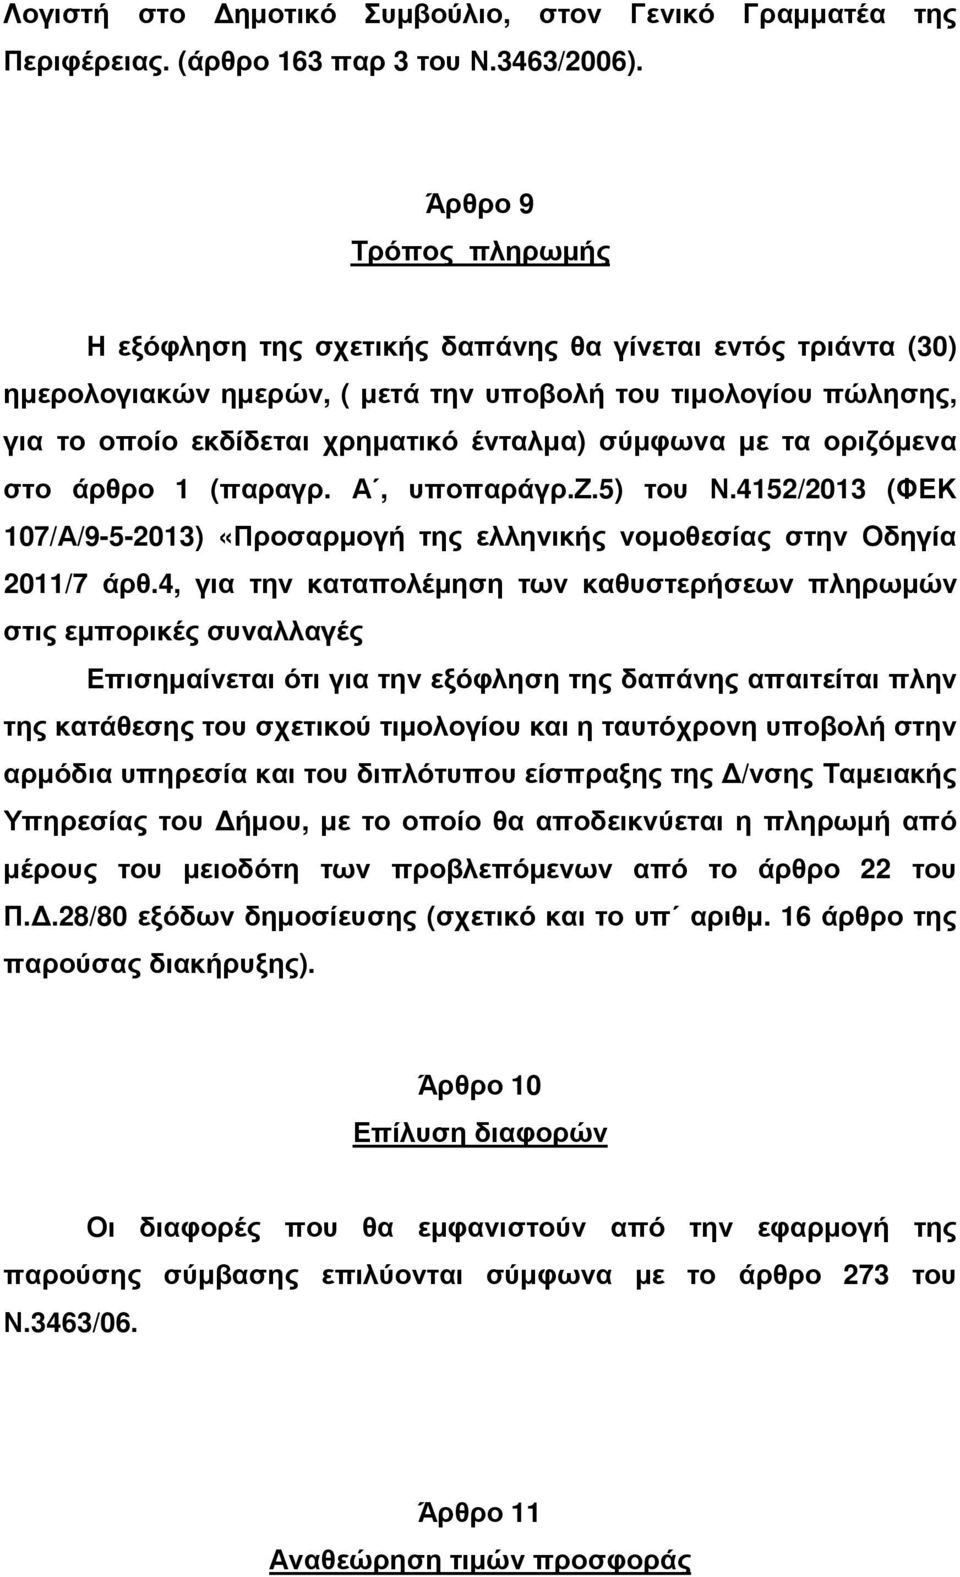 σύµφωνα µε τα οριζόµενα στο άρθρο 1 (παραγρ. Α, υποπαράγρ.ζ.5) του Ν.4152/2013 (ΦΕΚ 107/Α/9-5-2013) «Προσαρµογή της ελληνικής νοµοθεσίας στην Οδηγία 2011/7 άρθ.